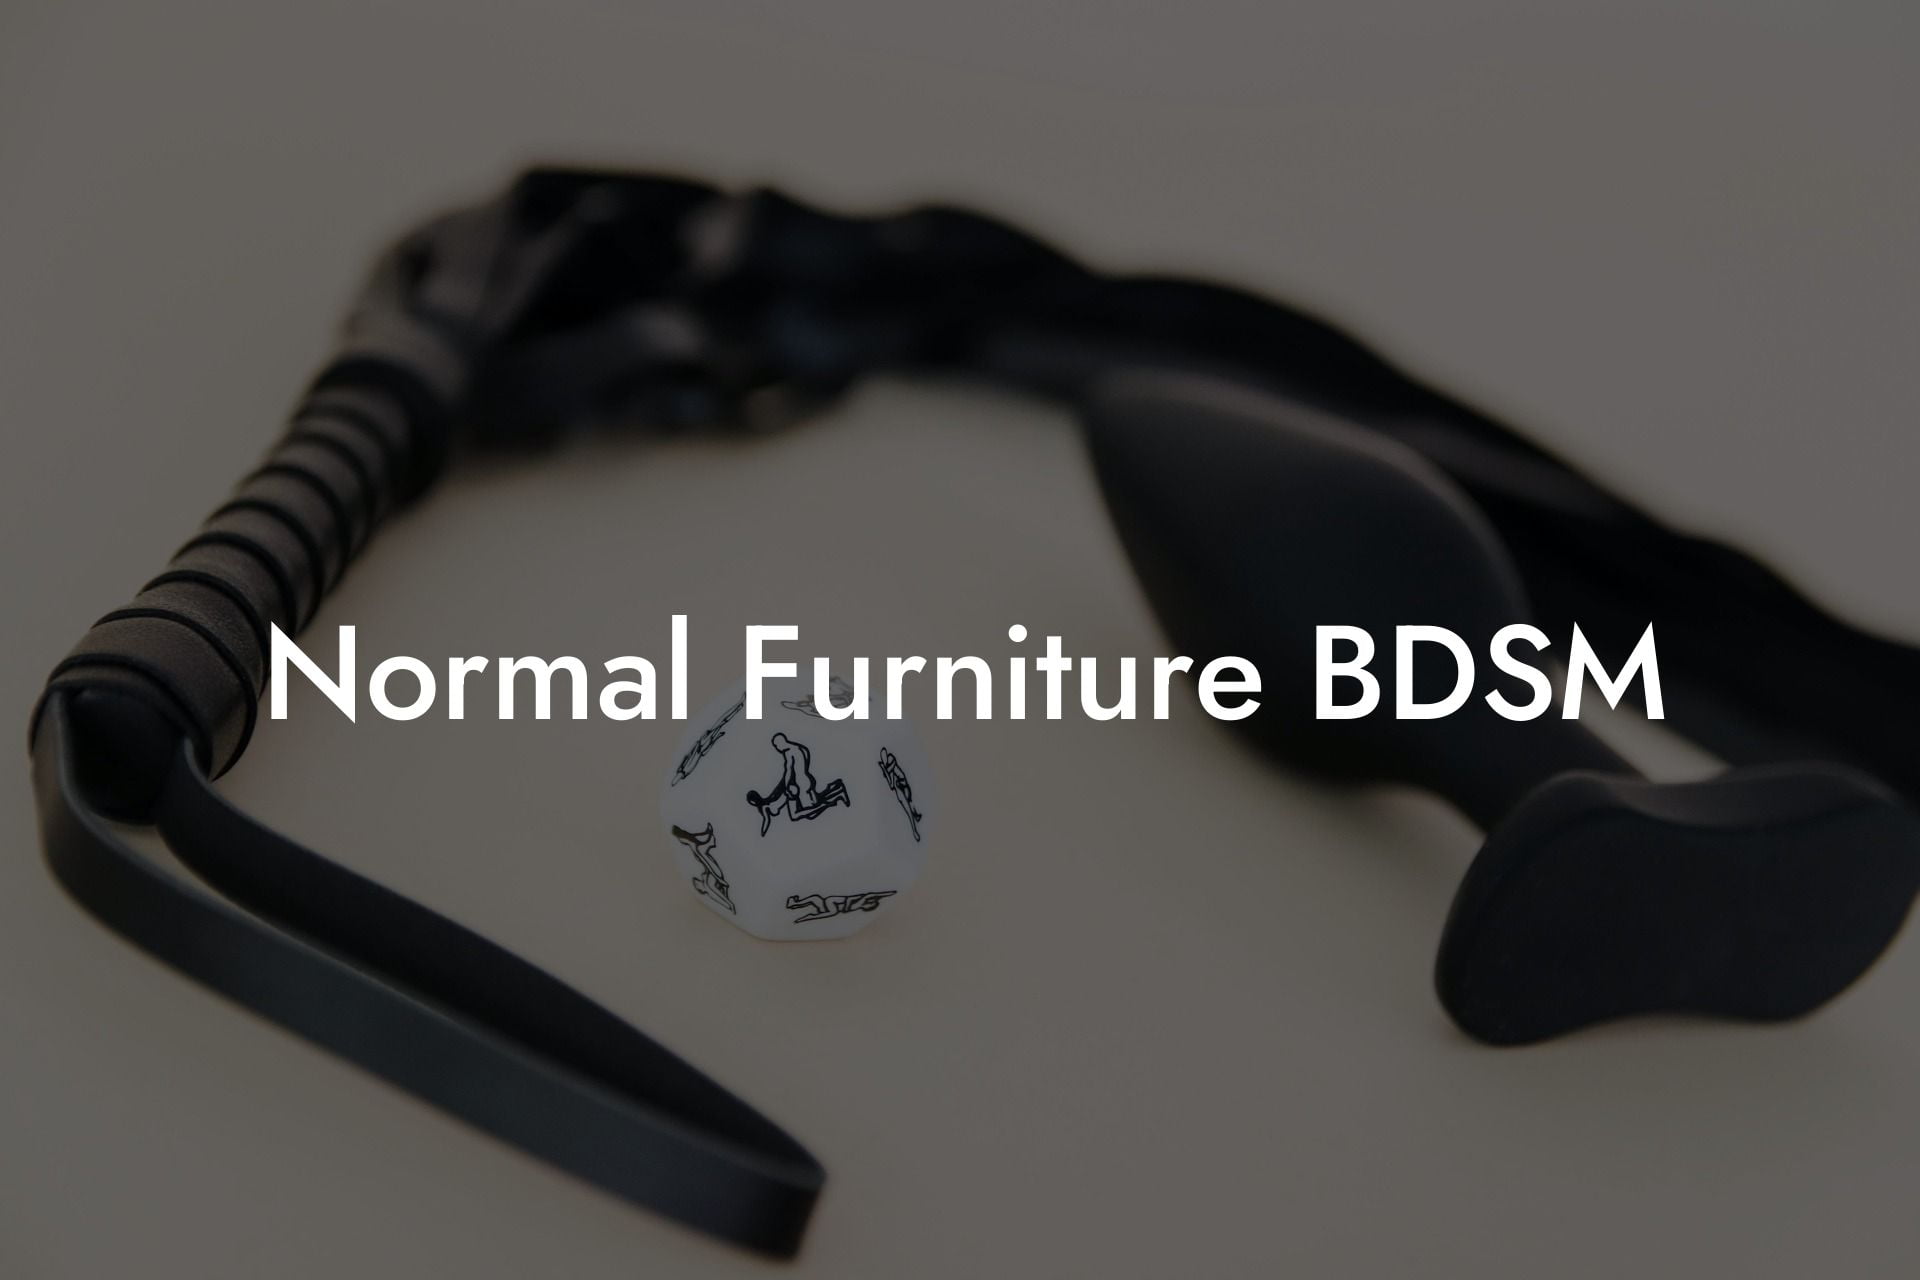 Normal Furniture BDSM